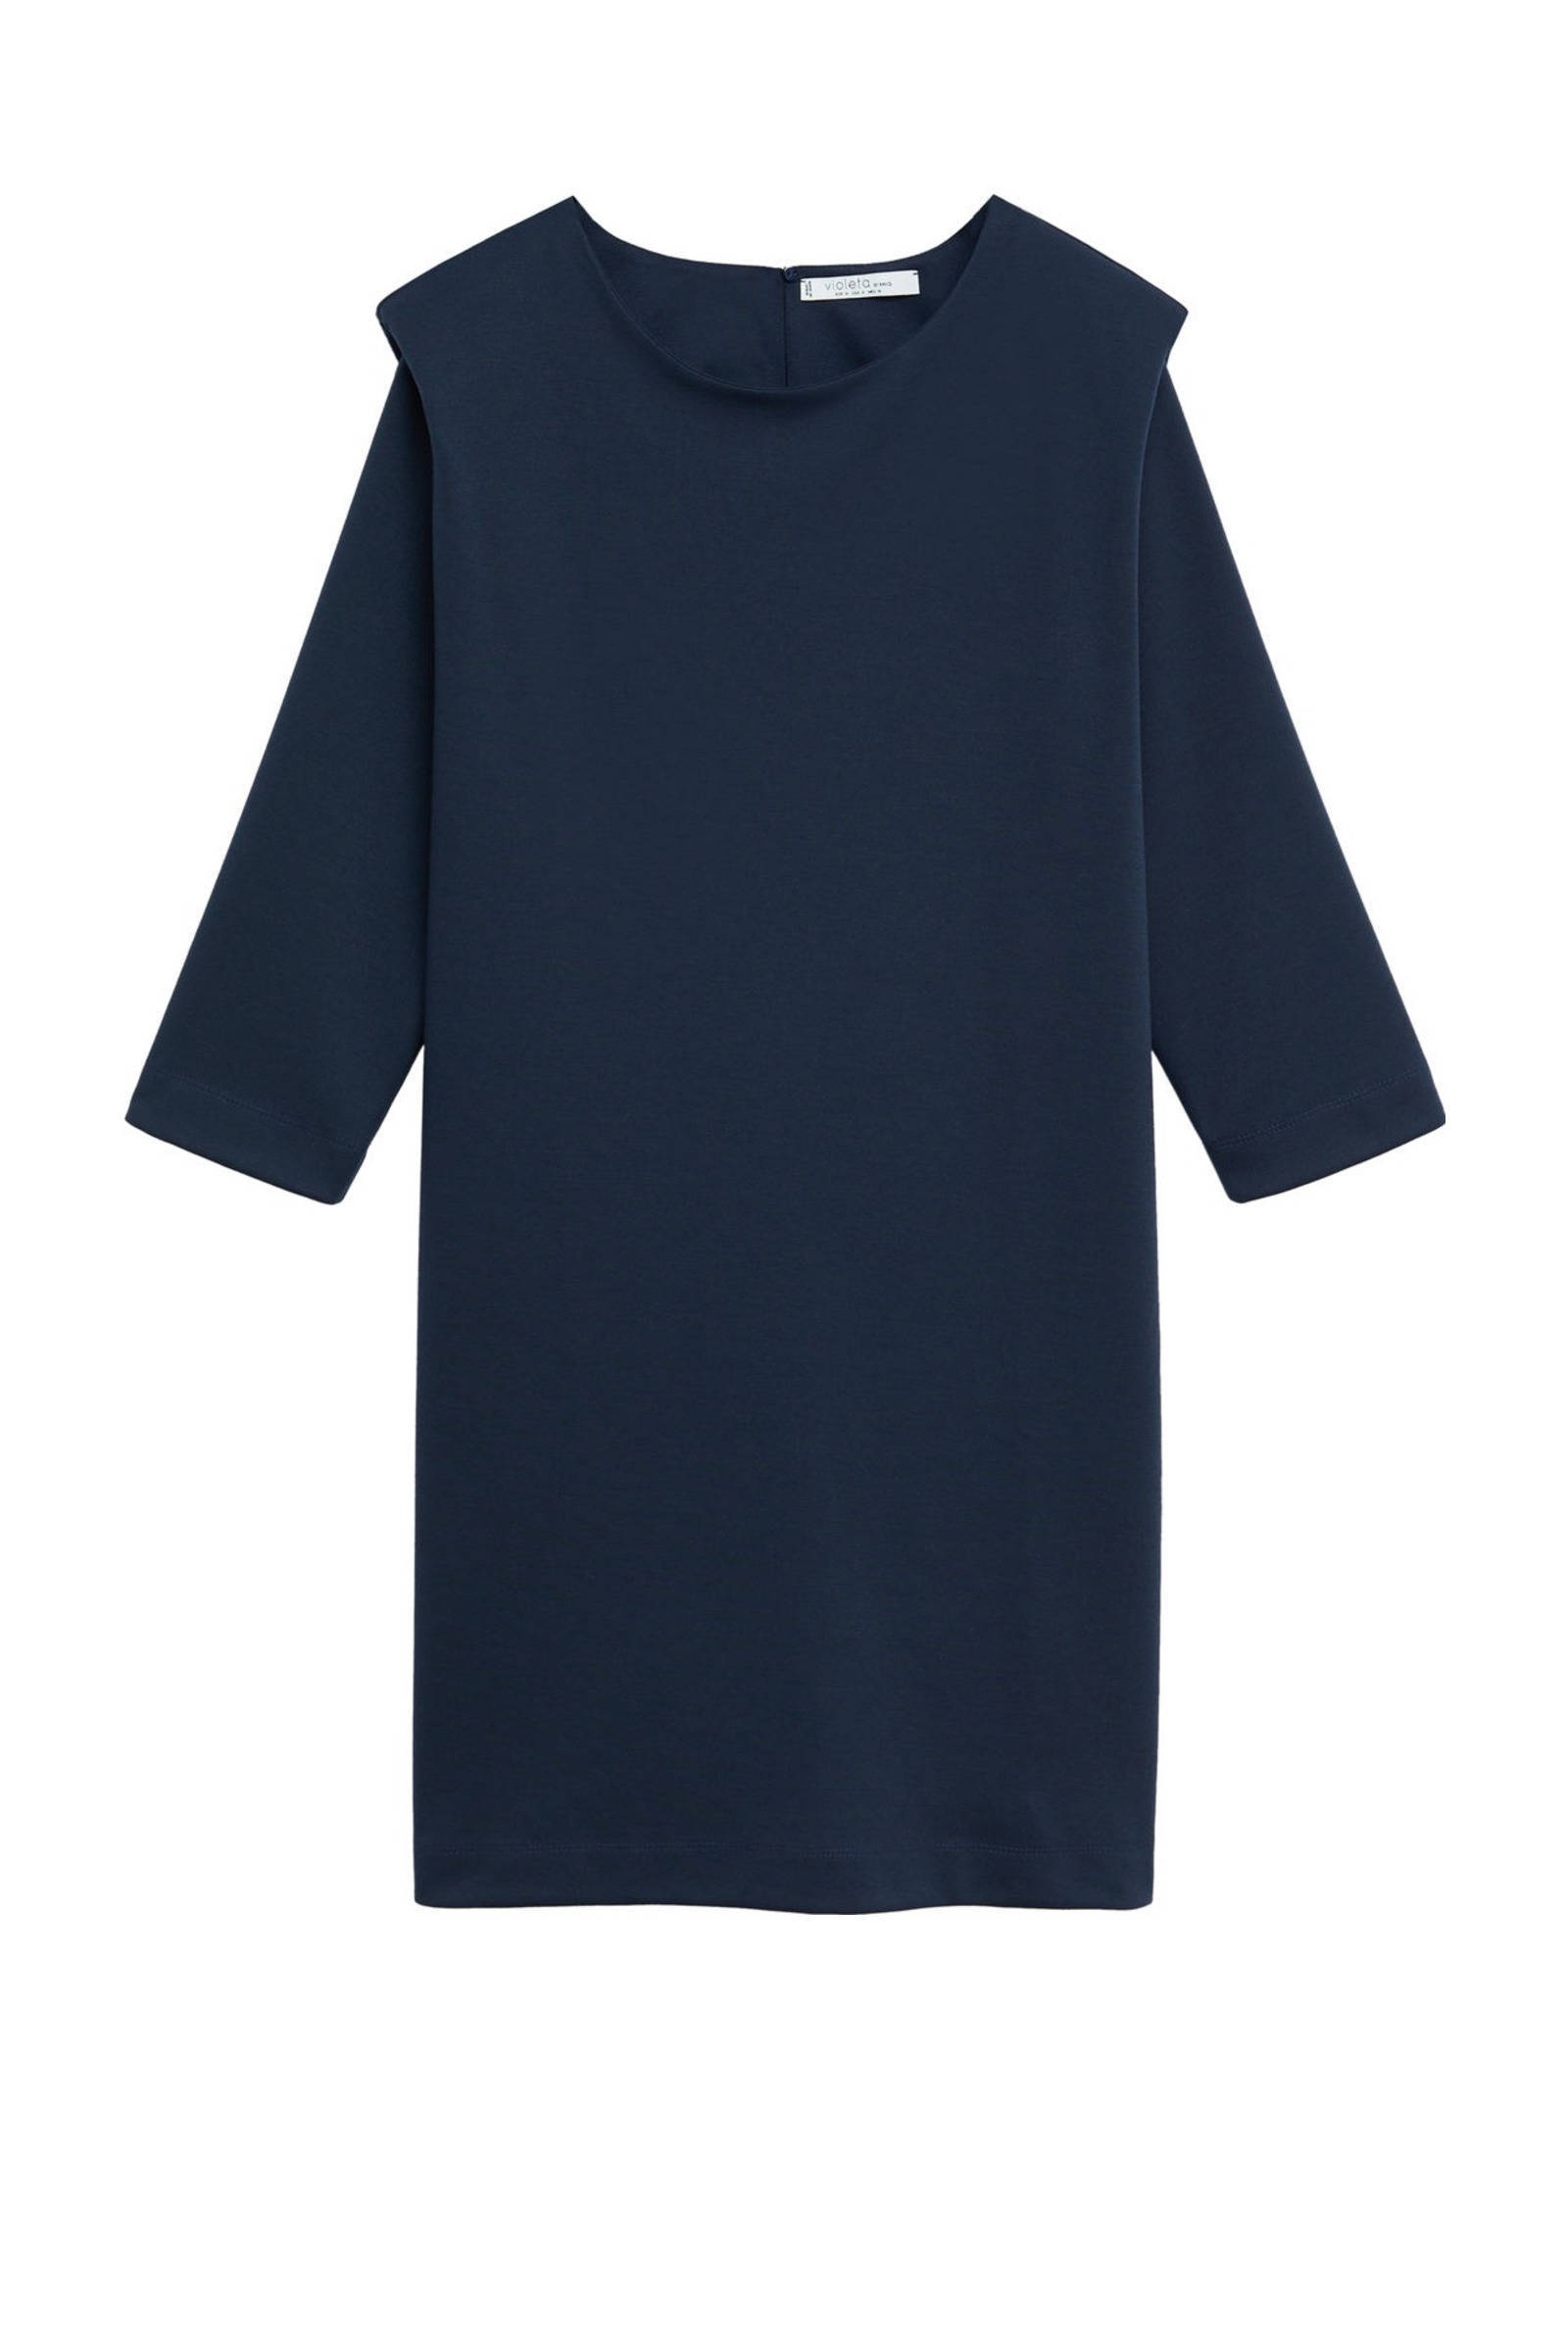 Violeta by Mango jurk marine met schoudervulling online kopen